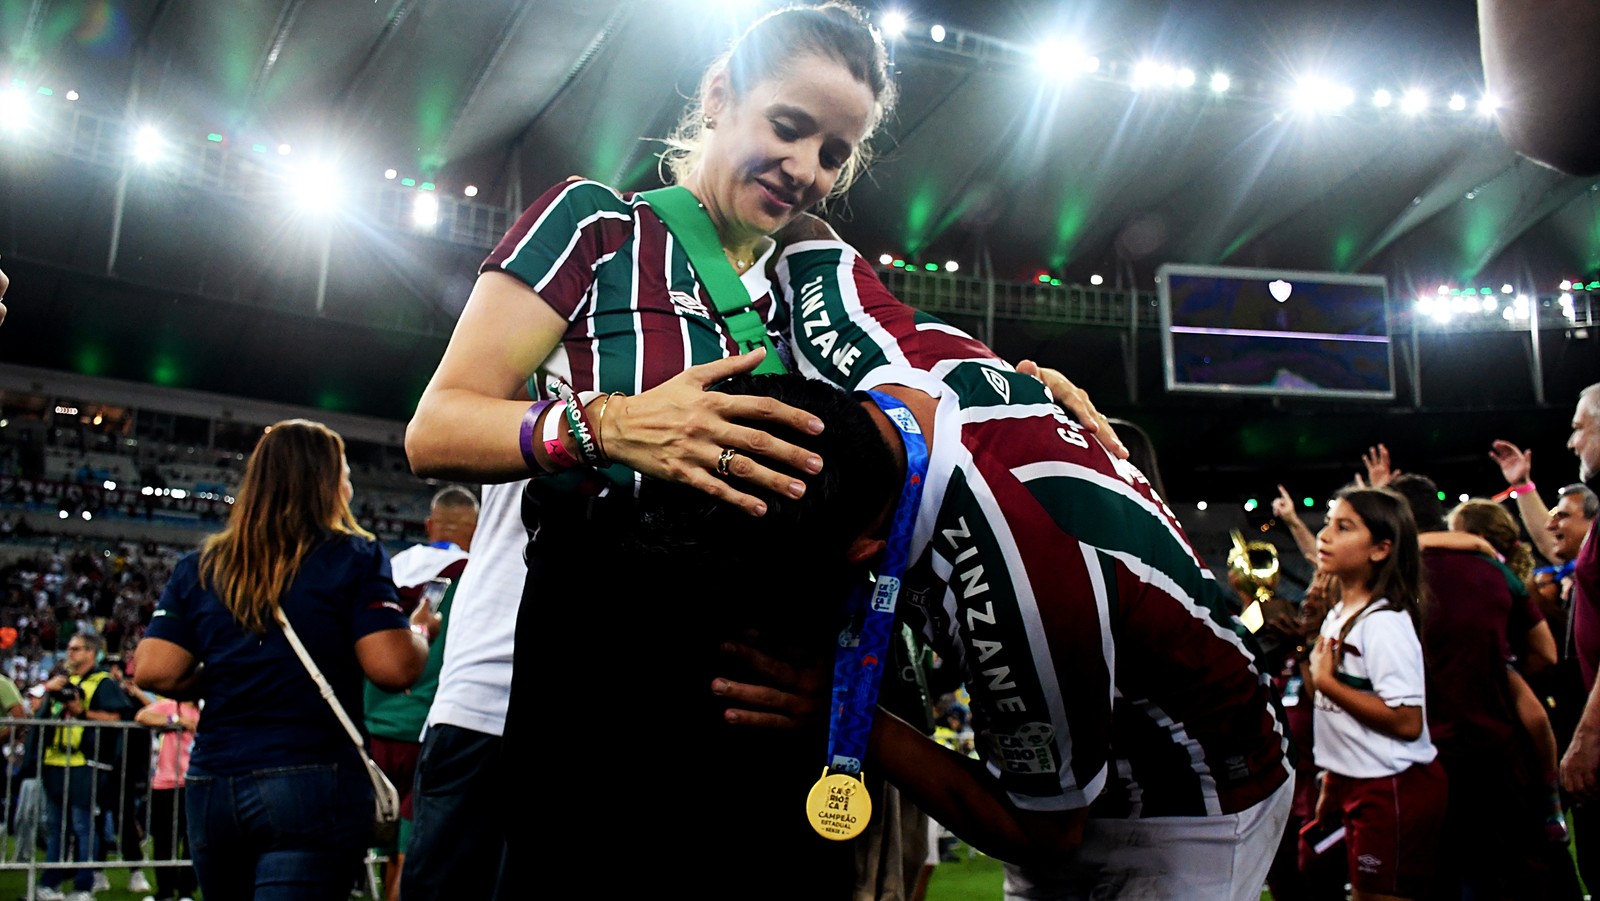 Germán Cano beijando a barriga de sua mulher grávida — Foto: MAILSON SANTANA/FLUMINENSE FC